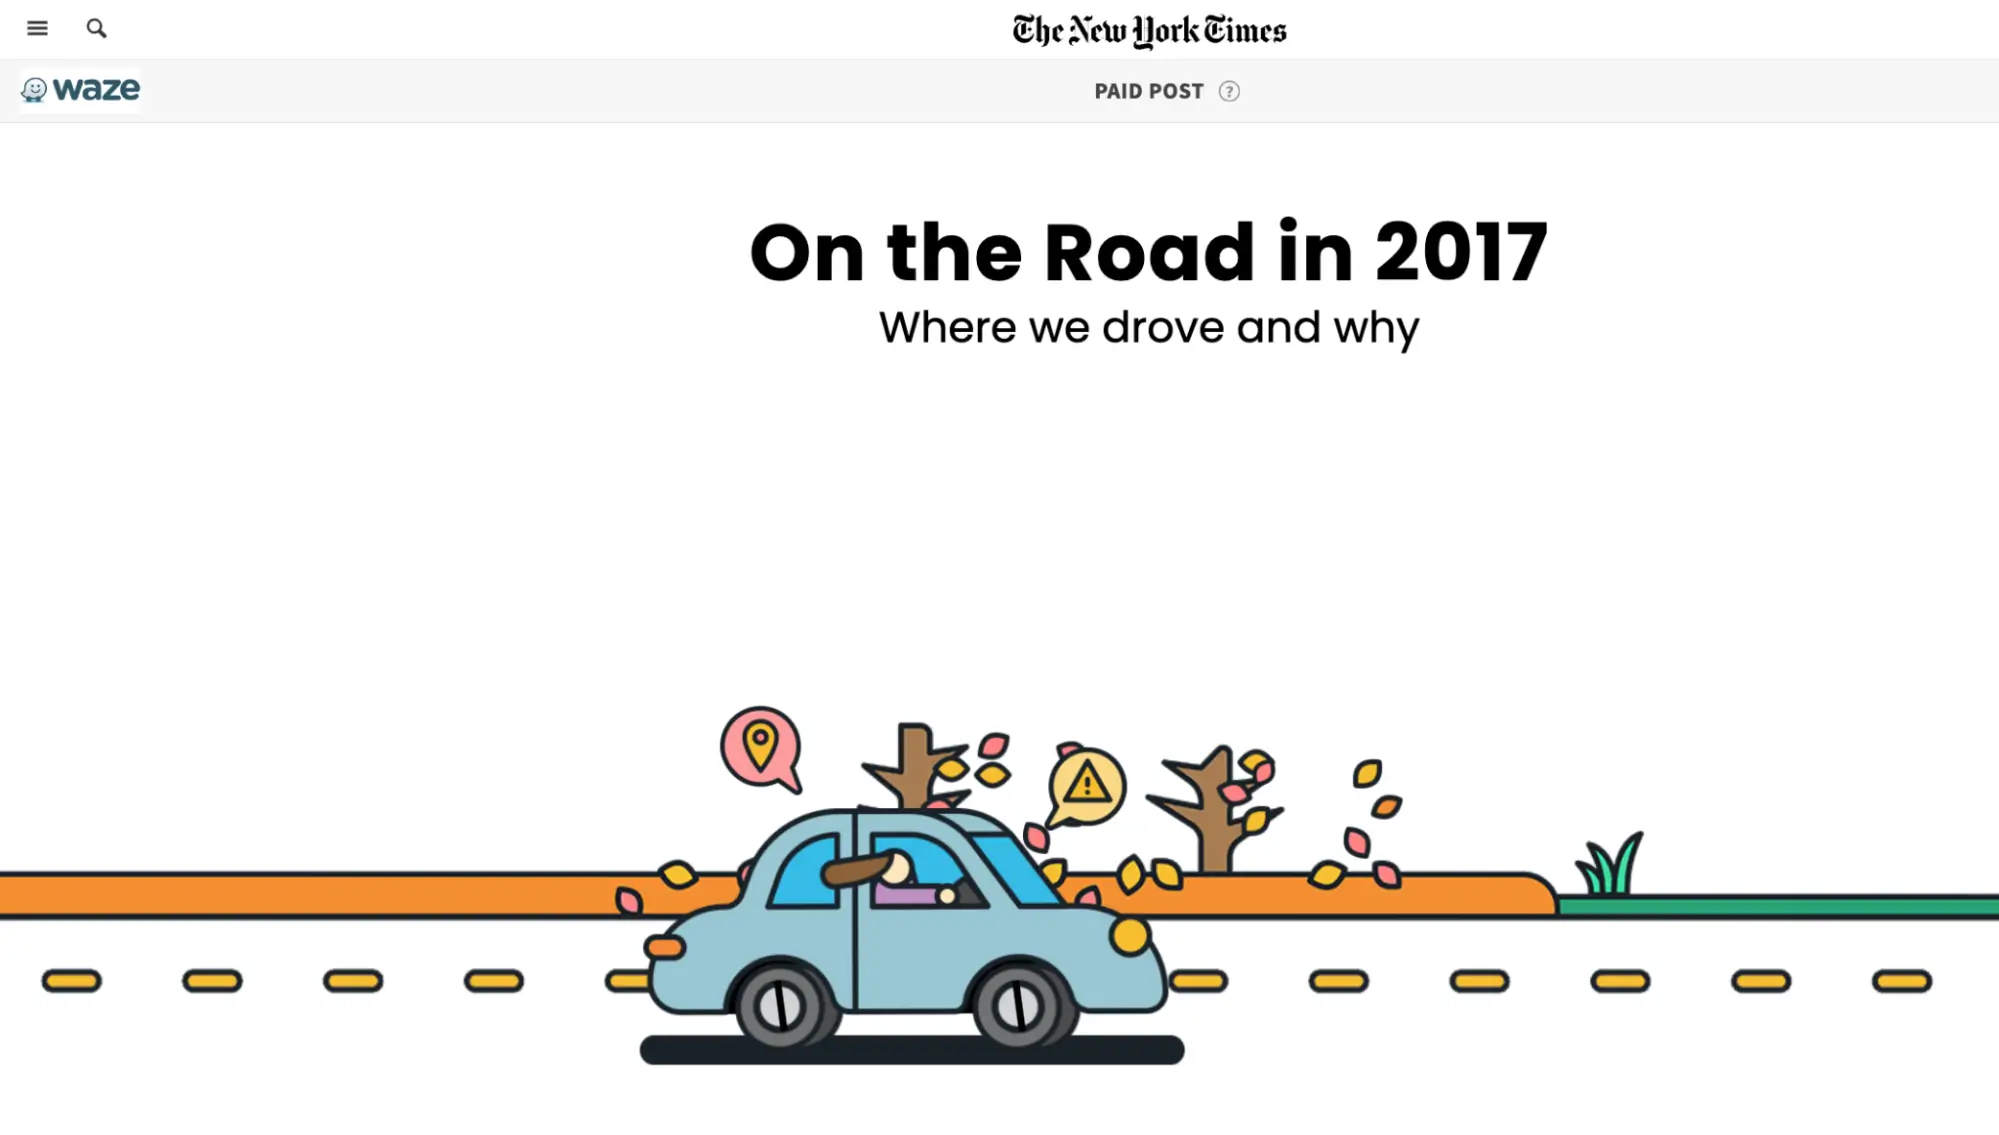 Cette image montre la campagne « On the Road » de Waze, créée en partenariat avec le New York Times, présentant un contenu interactif basé sur des données d'application réelles. La campagne visait à découvrir les tendances dominantes et les raisons qui les sous-tendent, en proposant un contenu informatif et partageable via une page interactive avec des graphiques accrocheurs.